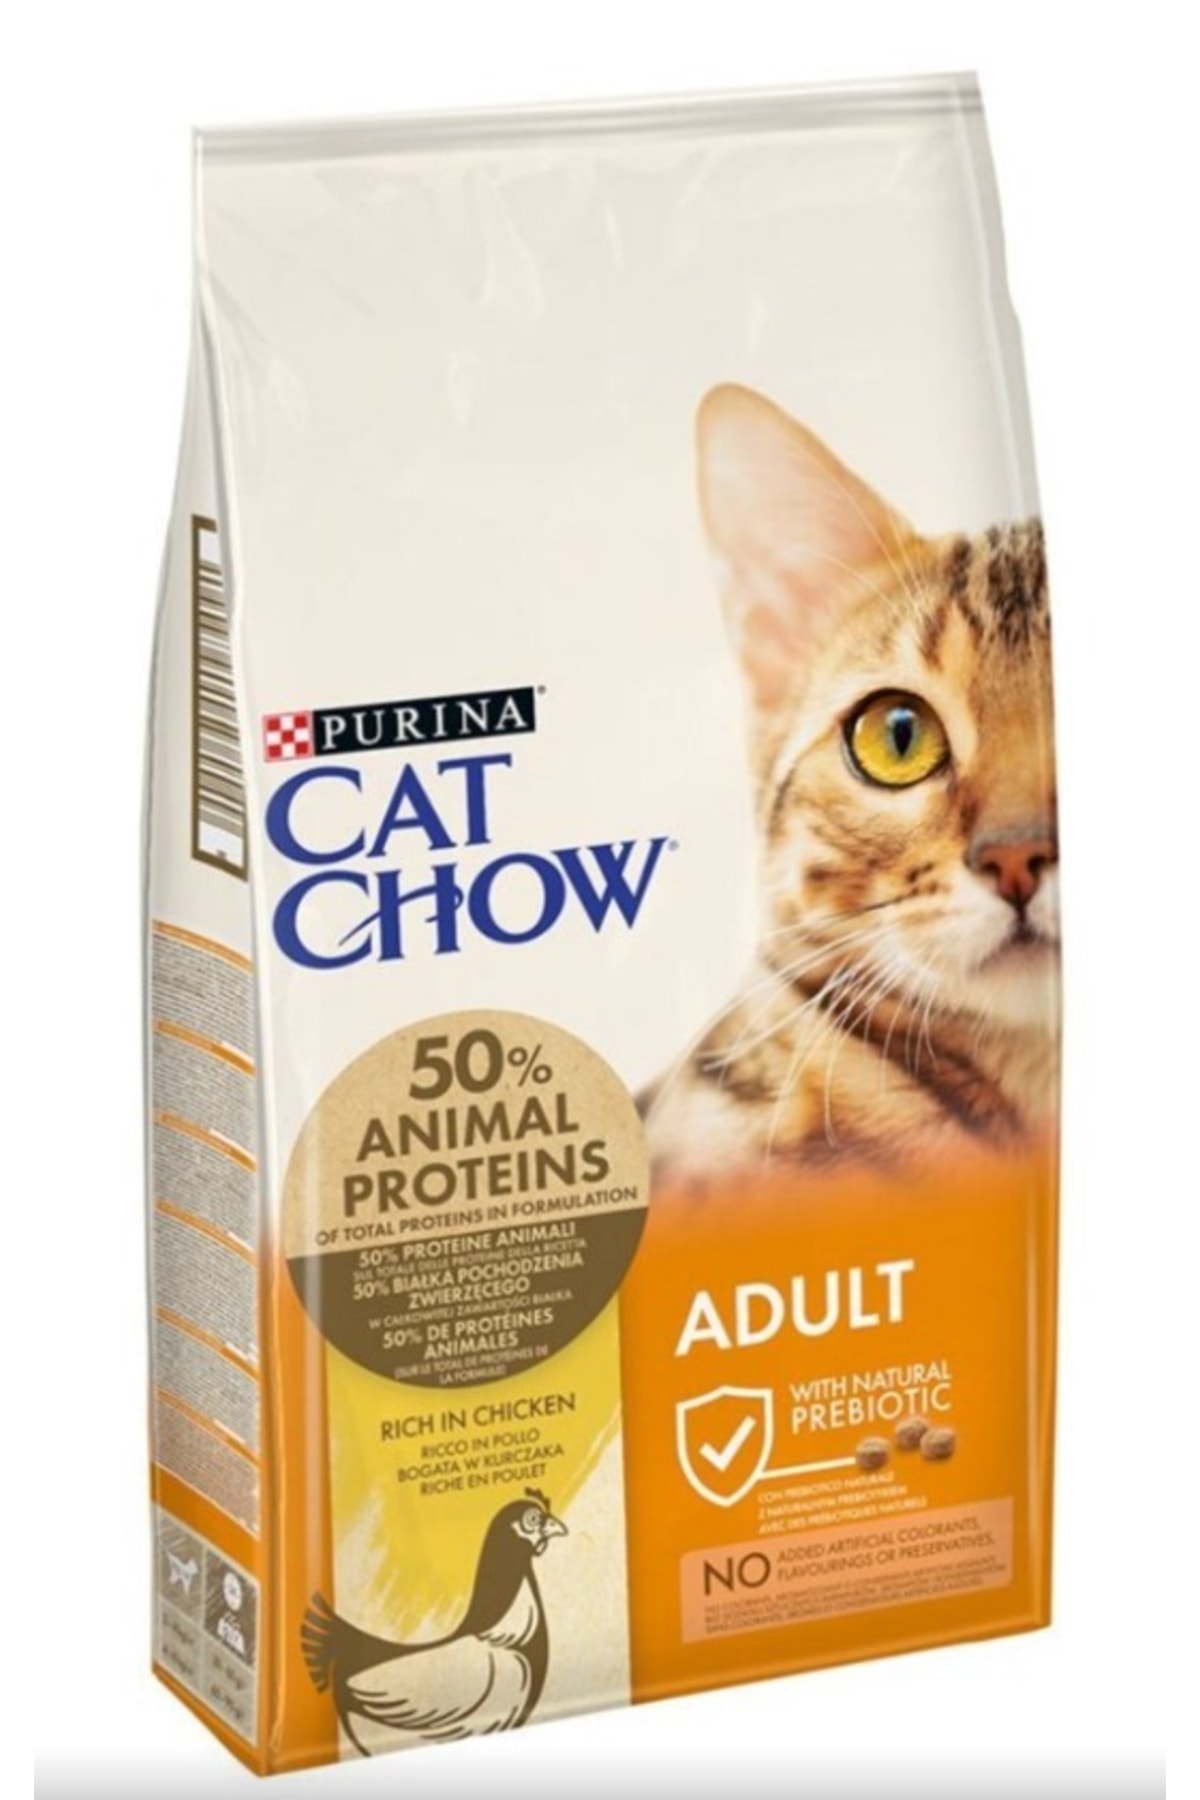 Purina Cat Chow Adult Tavuklu Hindili Kedi Maması 15kg